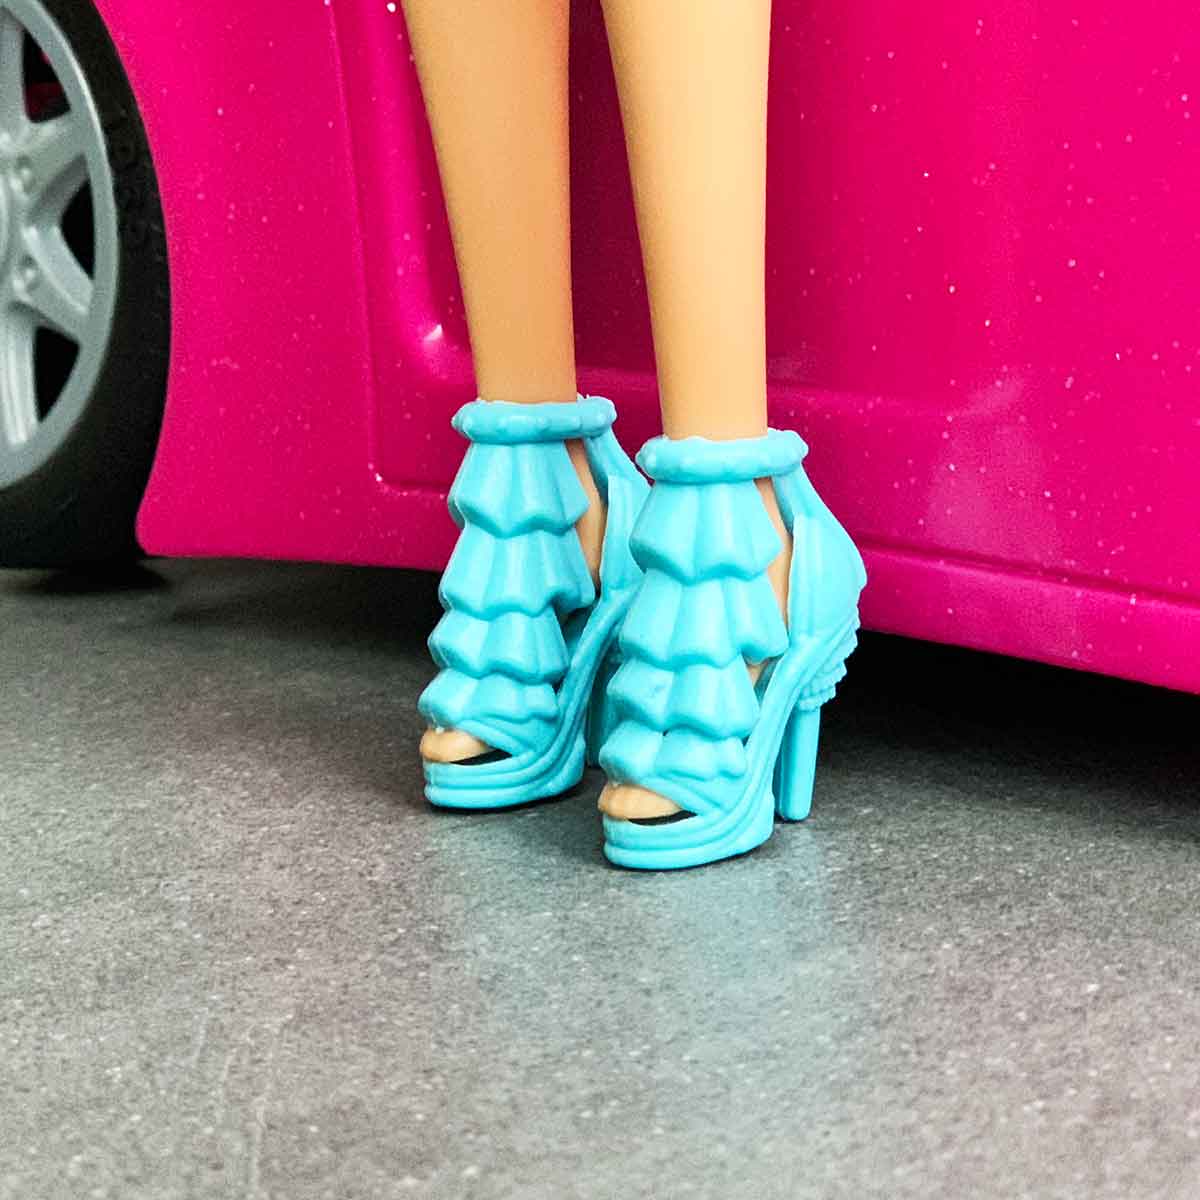 Barbie schoenen lichtblauwe pumps met laagjesmotief en sierlijke hak